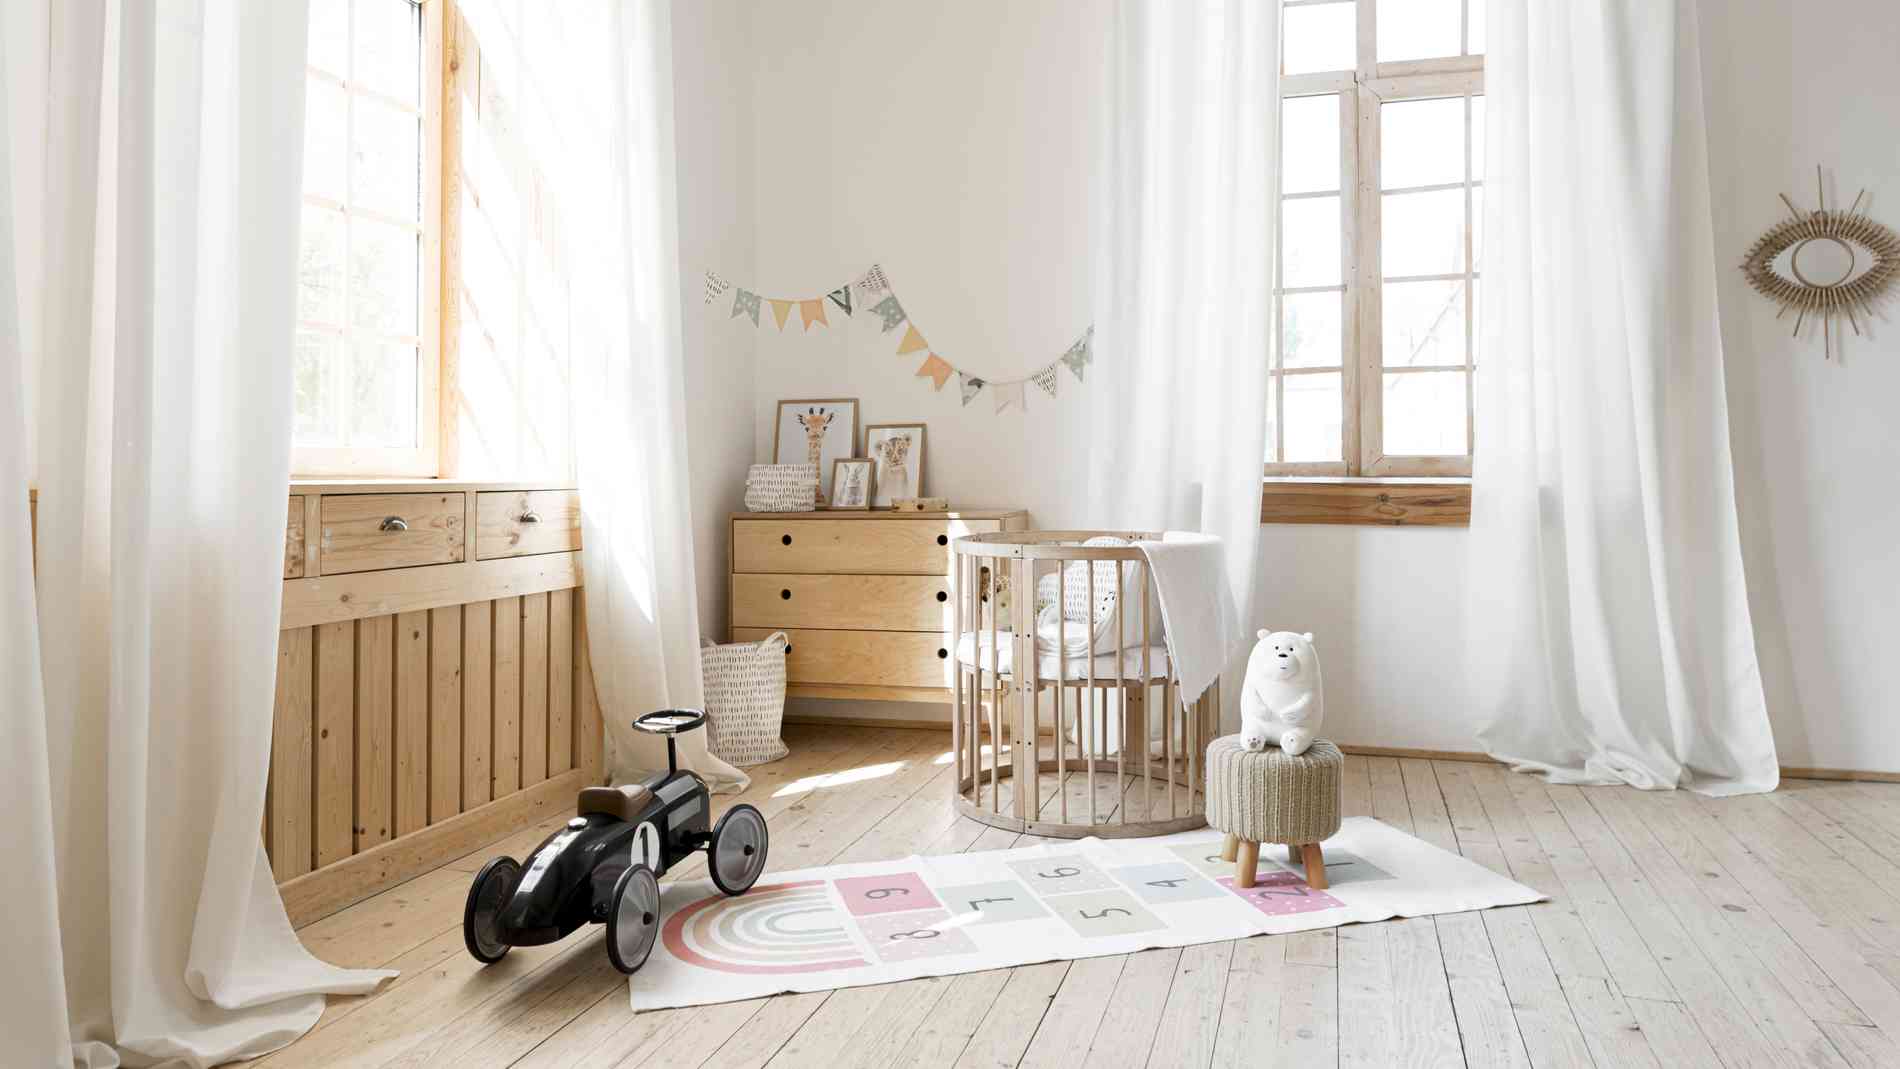 Modelo cortina quarto infantil - Freepik